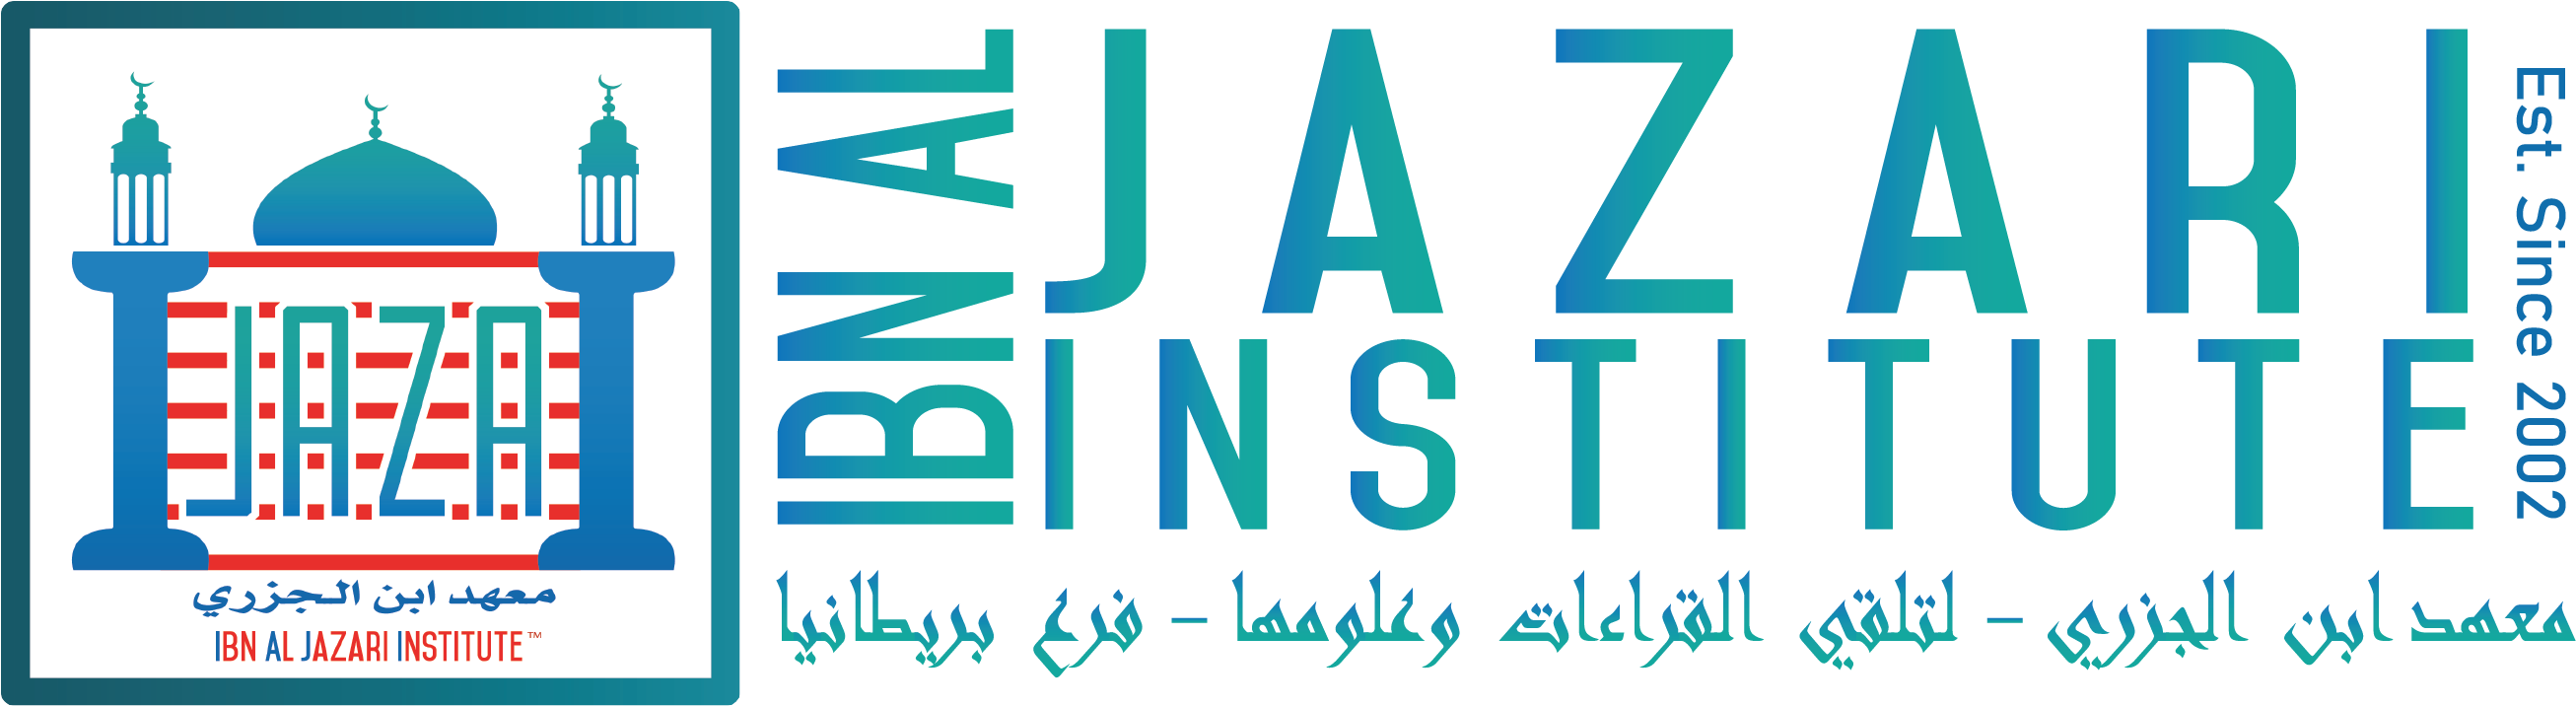 Ibn Al Jazari Institute